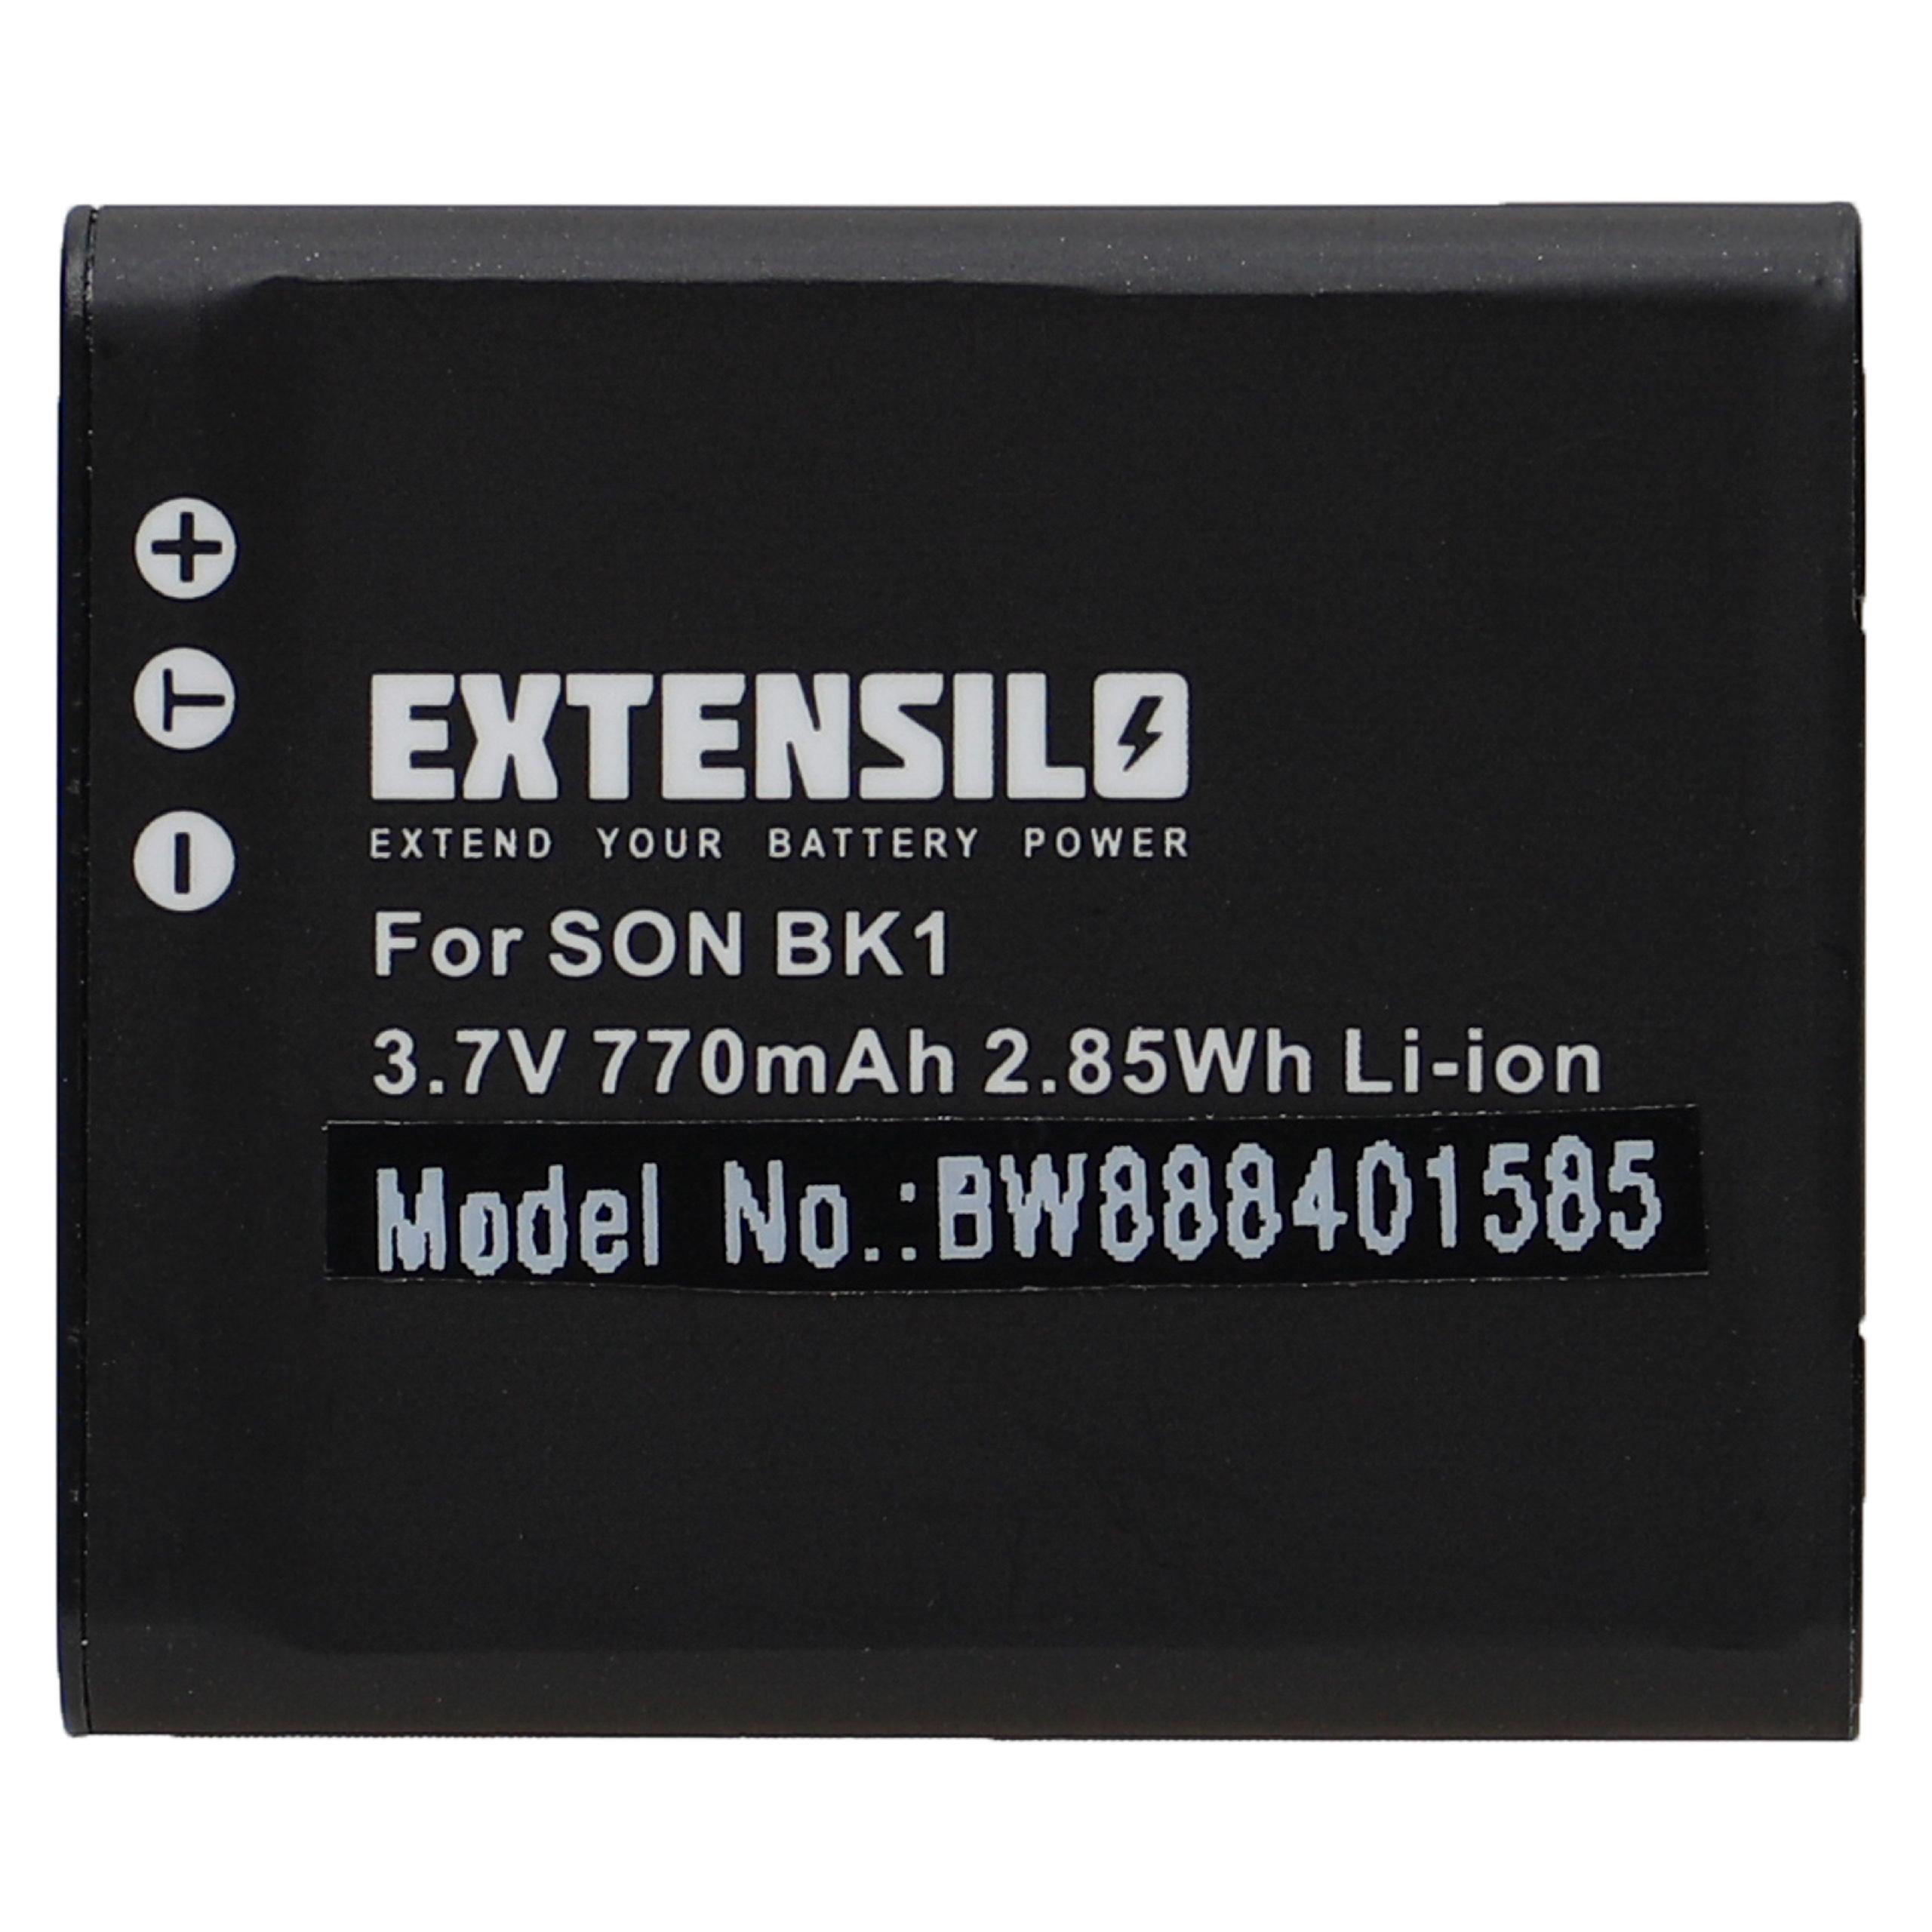 Batterie remplace Sony NP-FK1, NP-BK1 pour caméscope - 770mAh 3,7V Li-ion